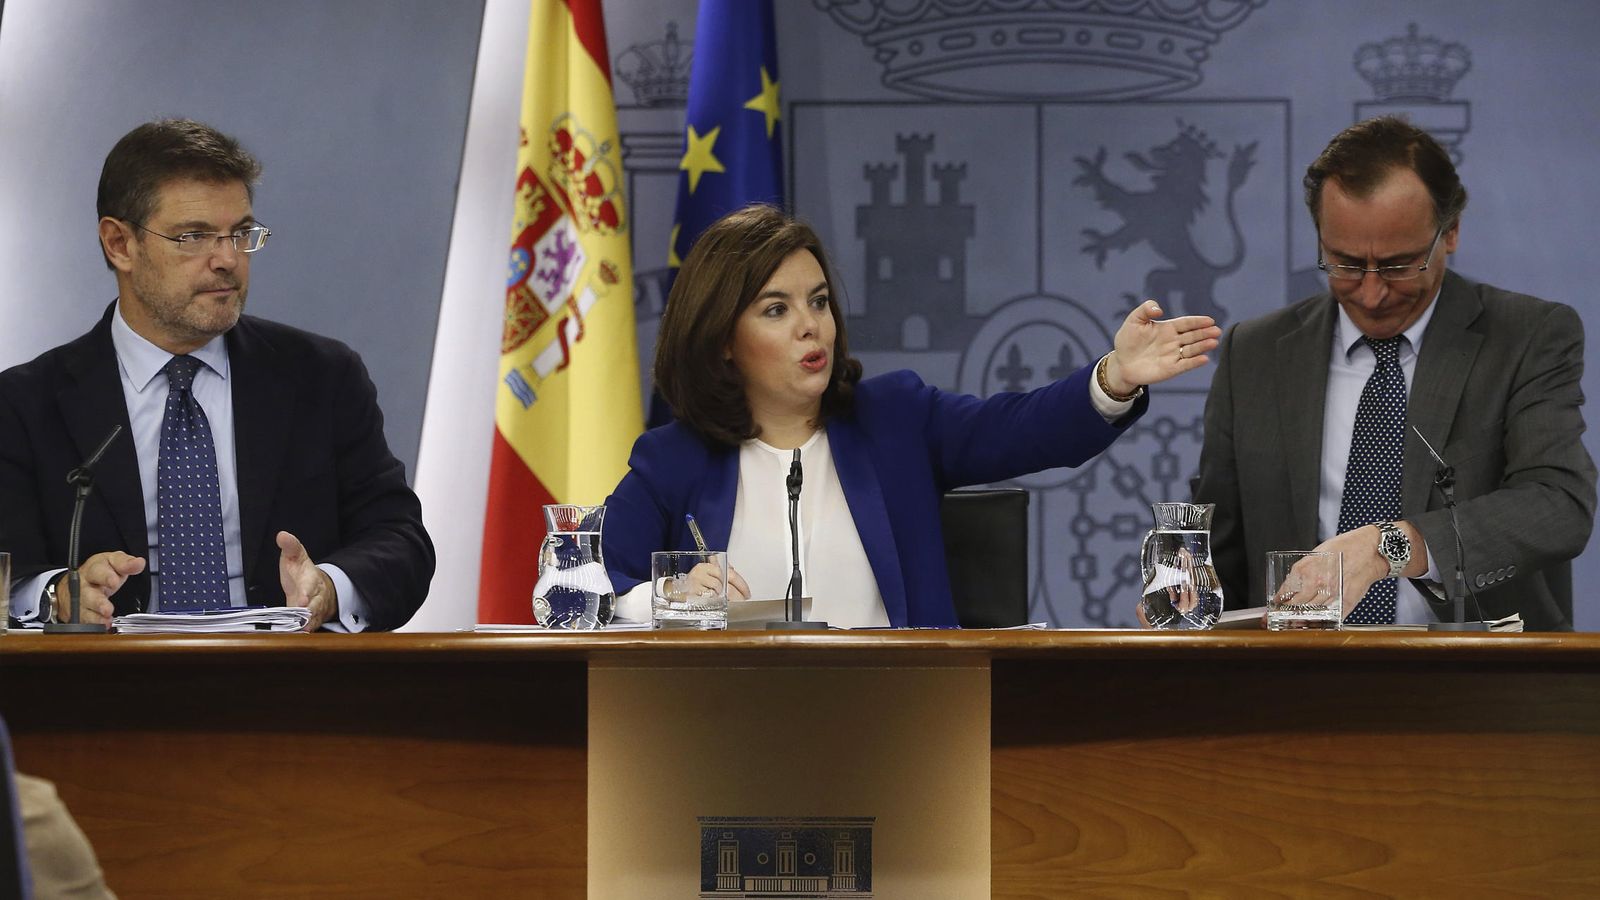 Foto: La vicepresidenta del Gobierno, Soraya Sáenz de Santamaría junto a los ministros Catalá (i) y Alonso (d). (EFE)